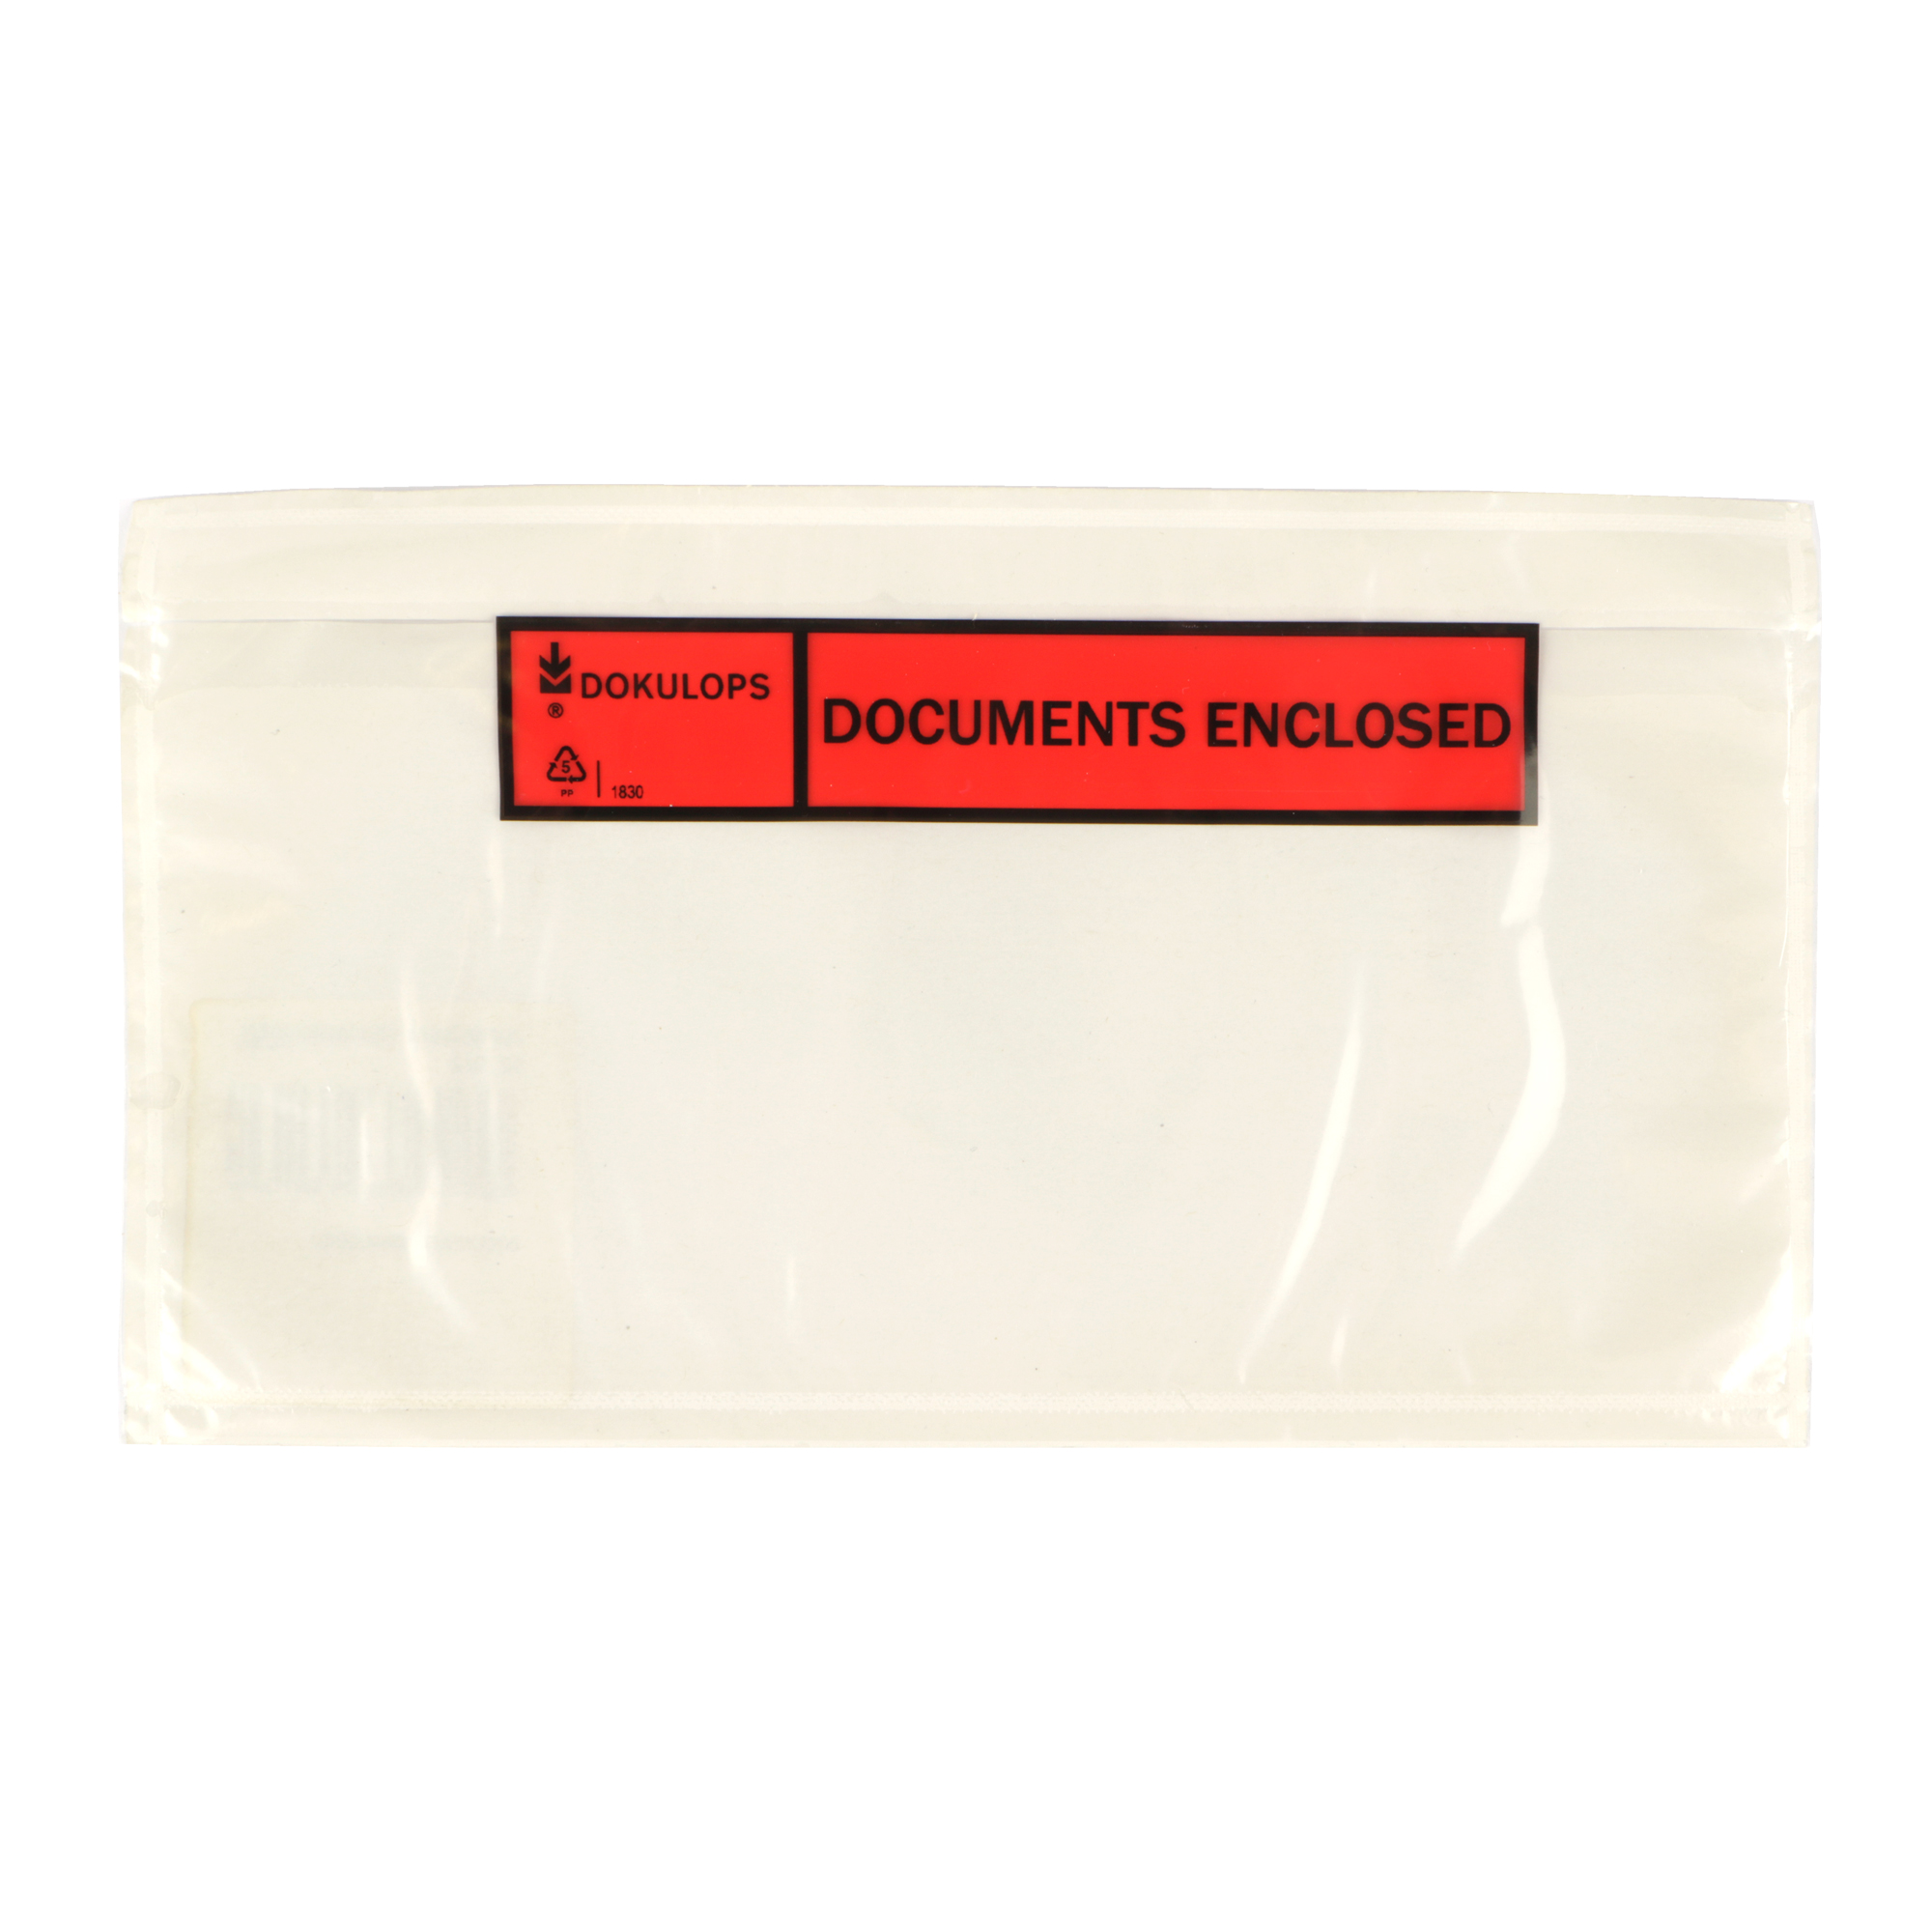 Picture of Ds à 1000 PP paklijst envelop 22x11,5 cm documents enclosed